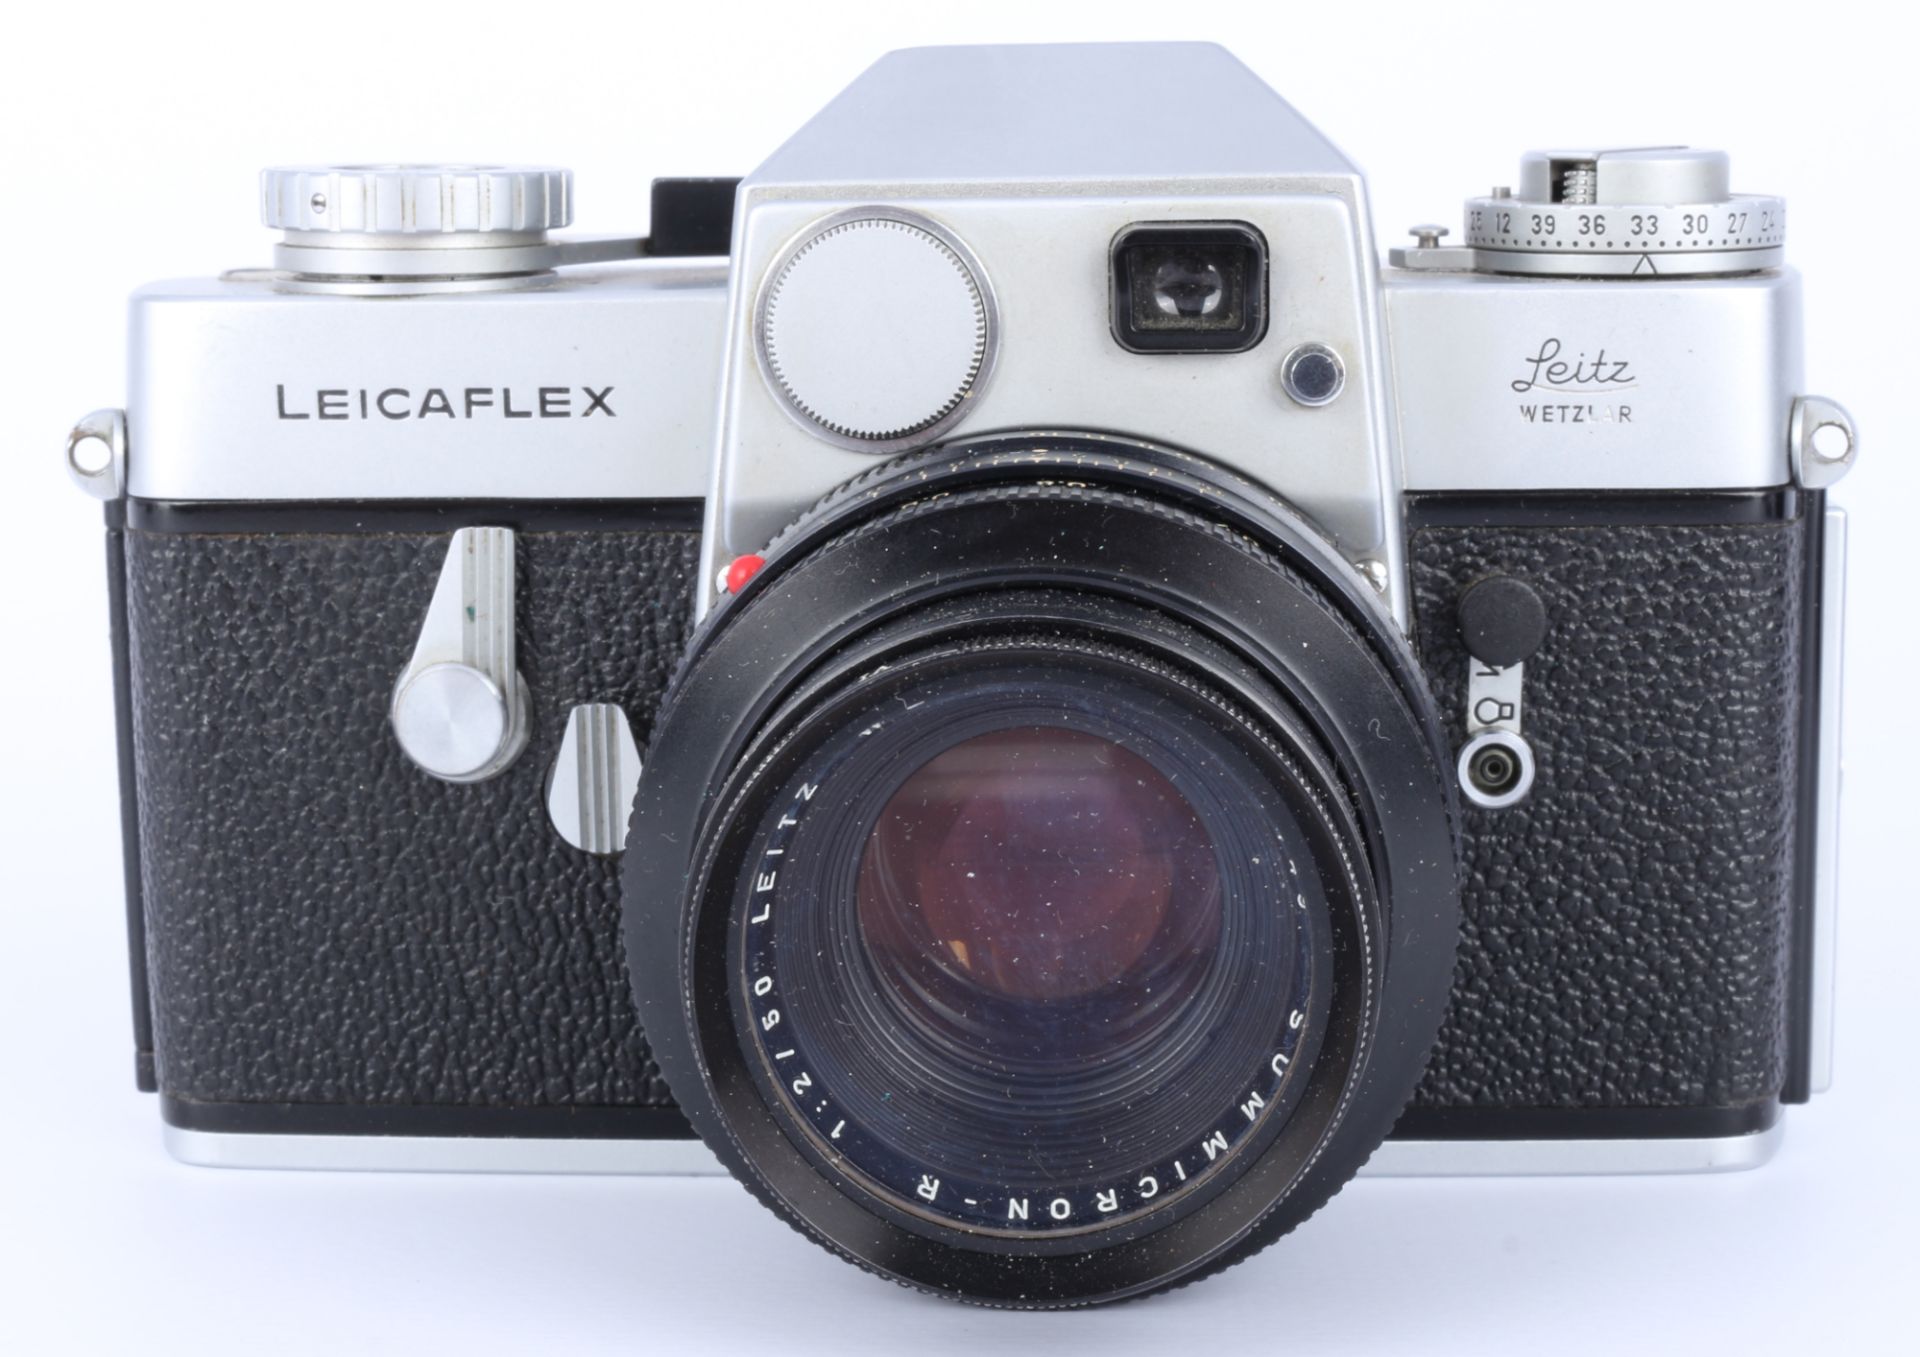 Leicaflex Kamera mit Zubehör, camera with accessories, - Image 2 of 5